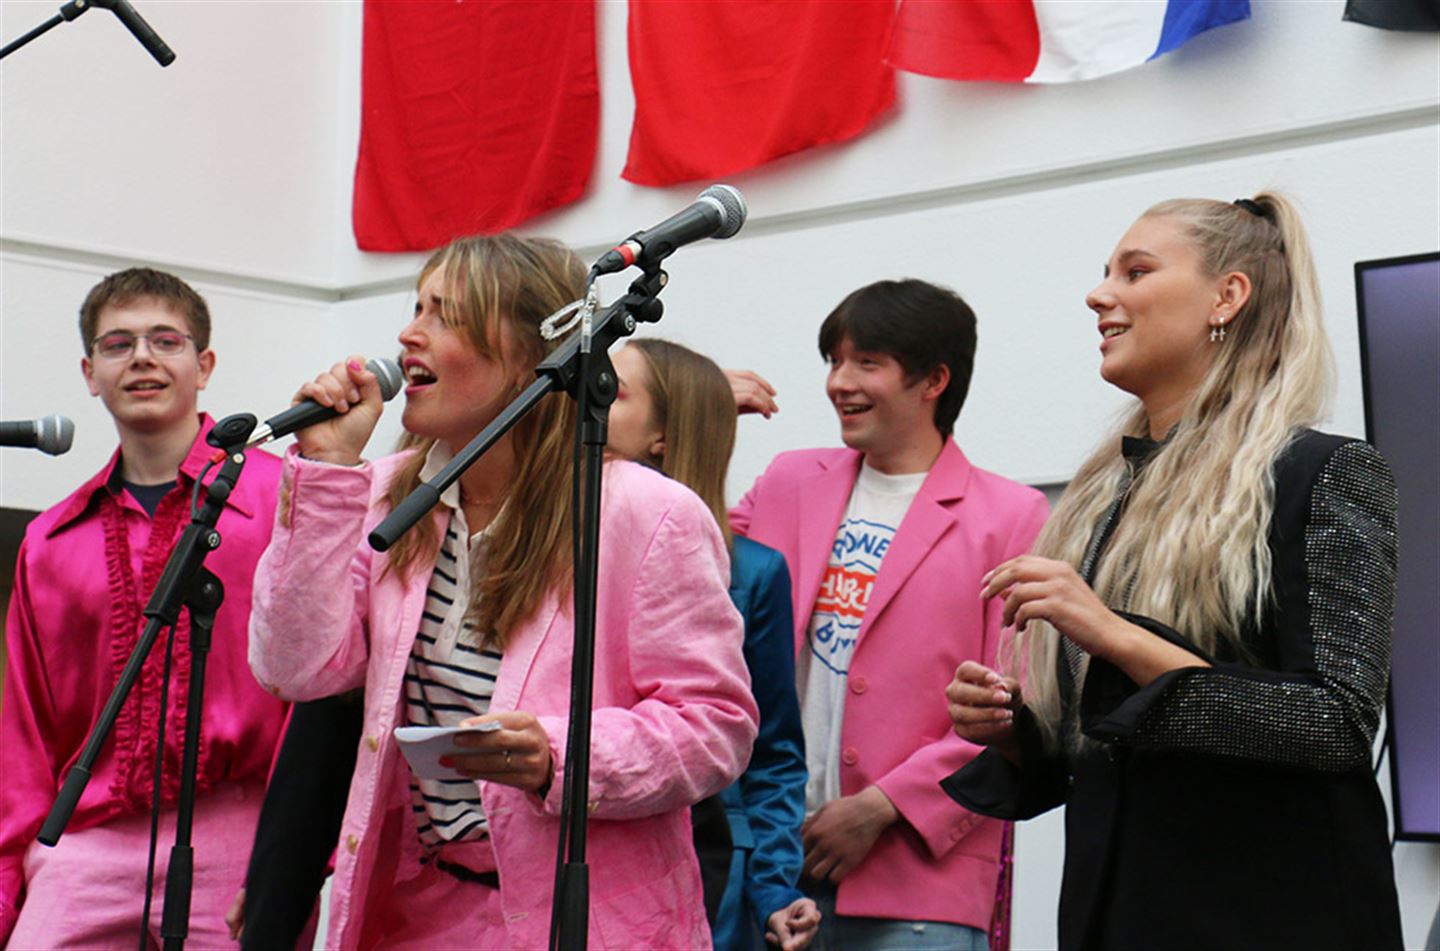 Elevar ved Amalie Skram videregående skole syng.